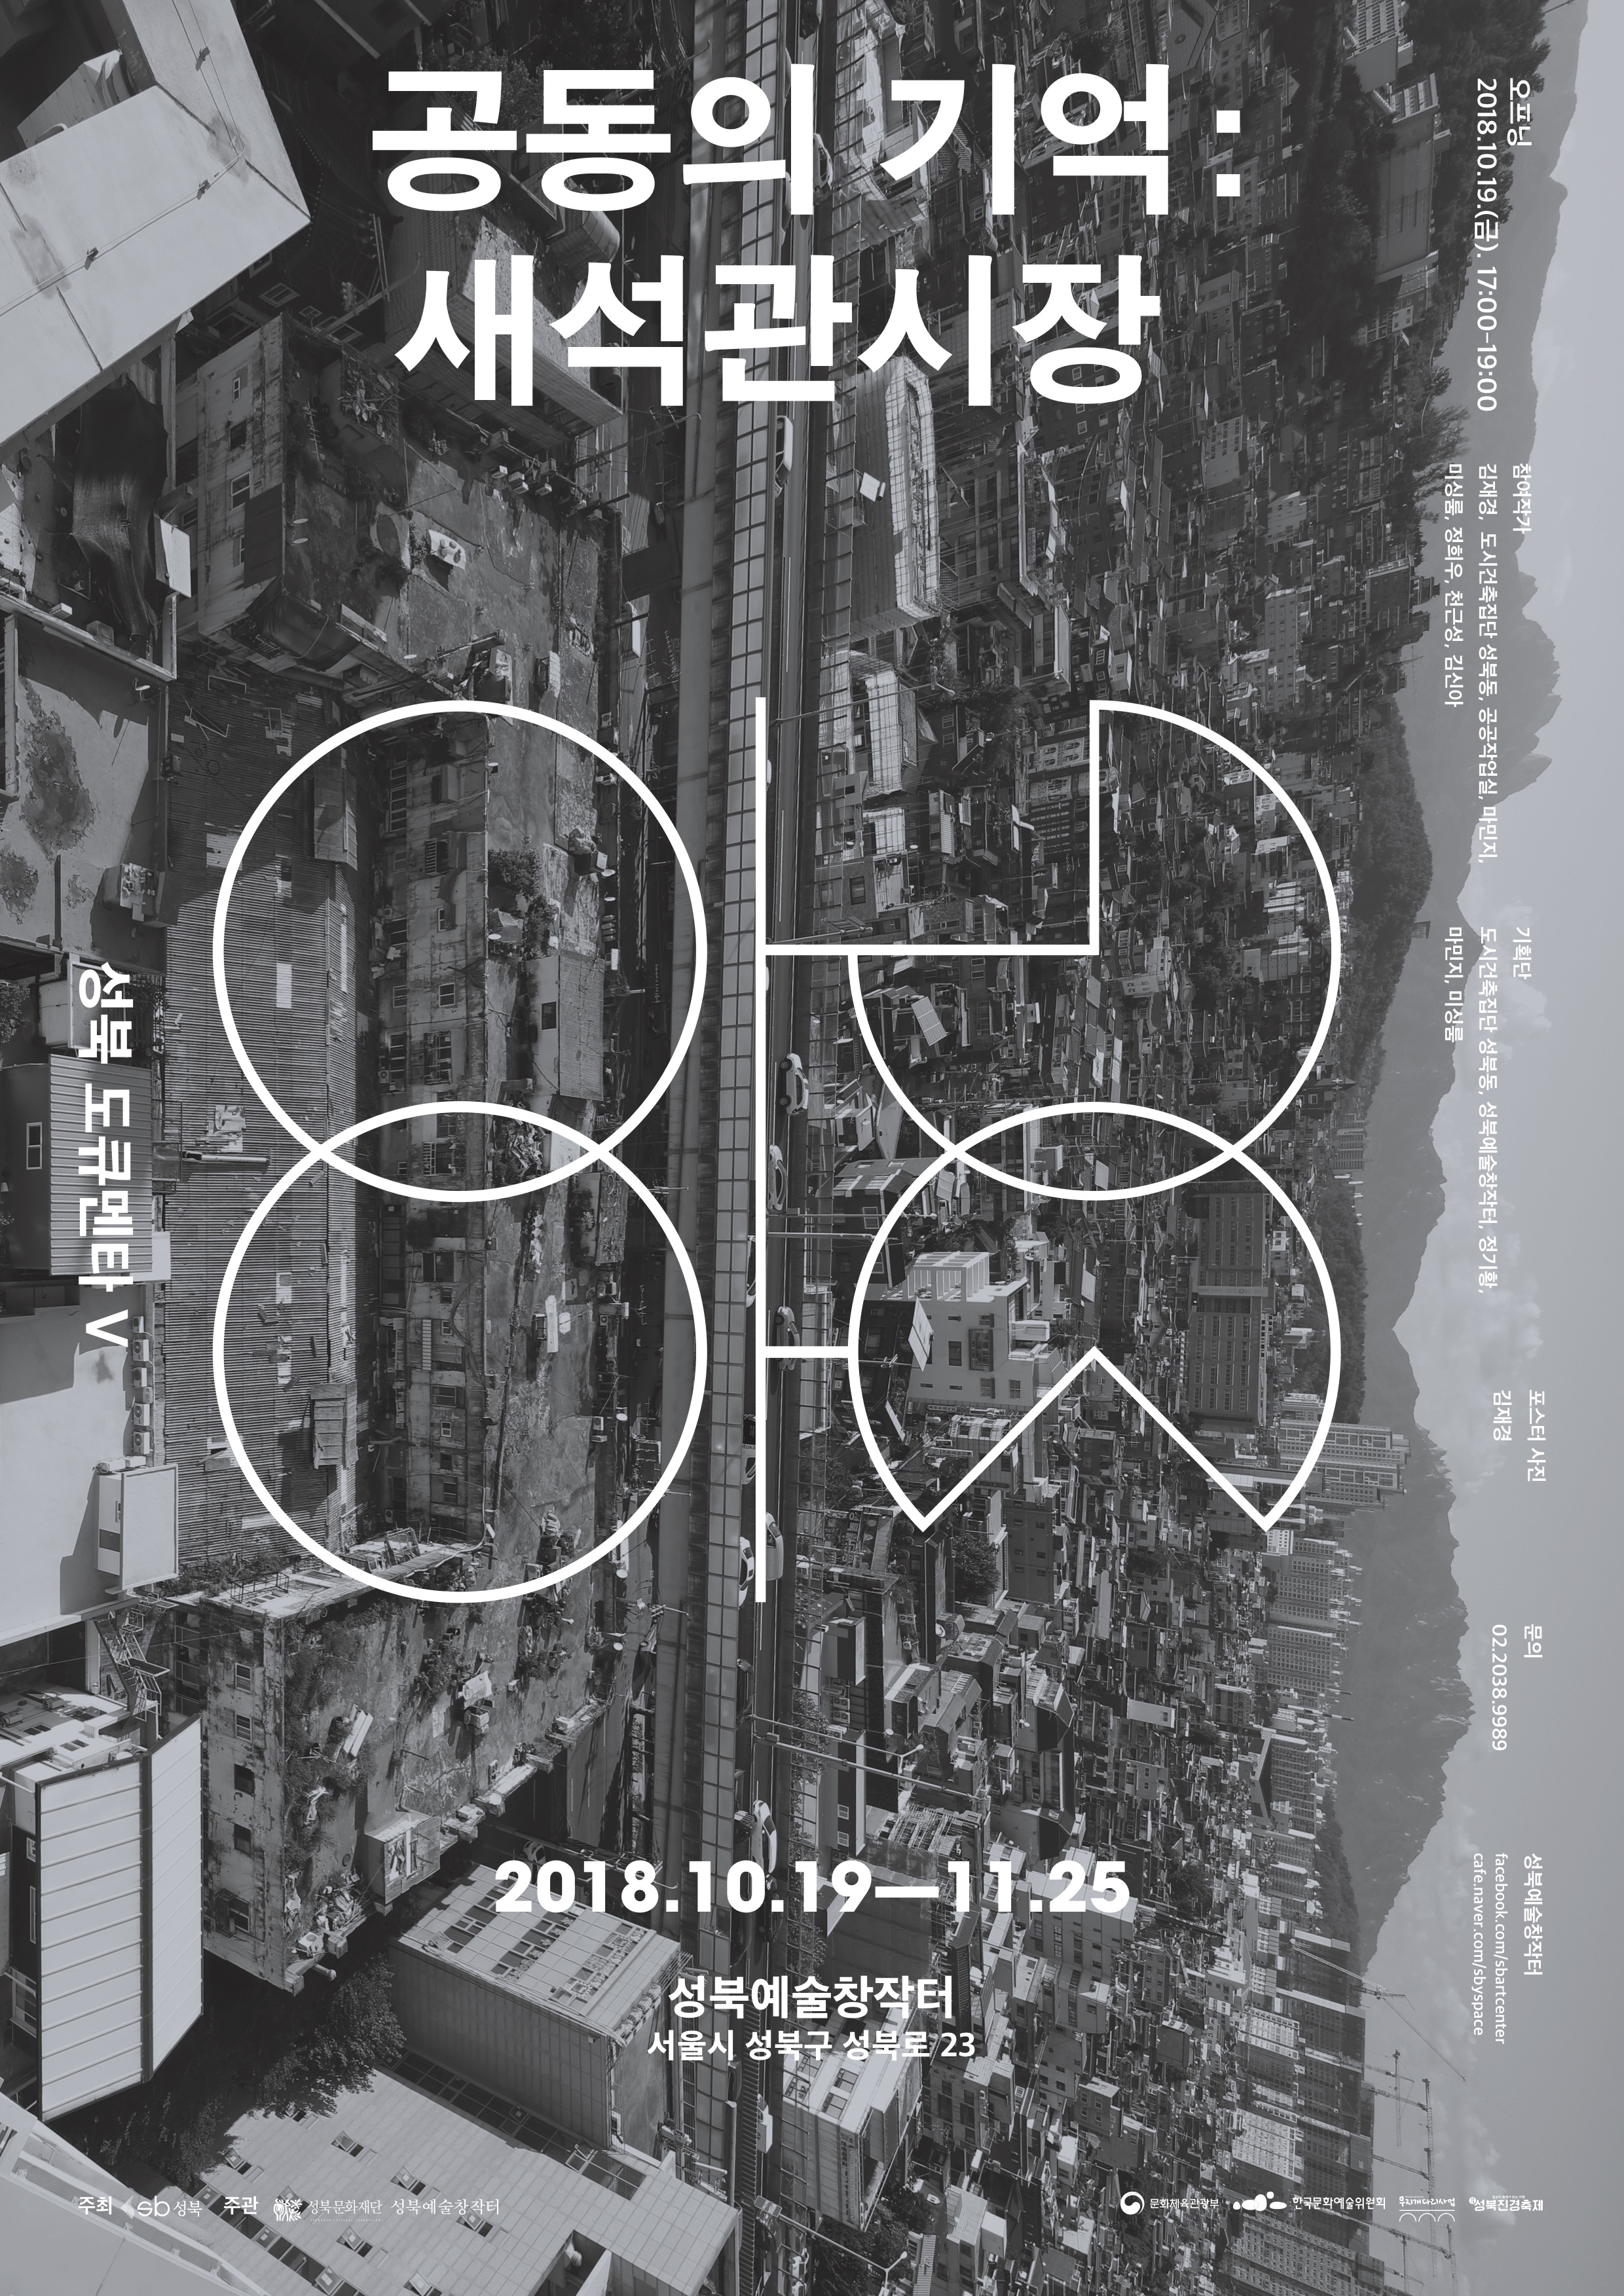  2018 성북도큐멘타 5 ‘공동의 기억 새석관시장’ 展